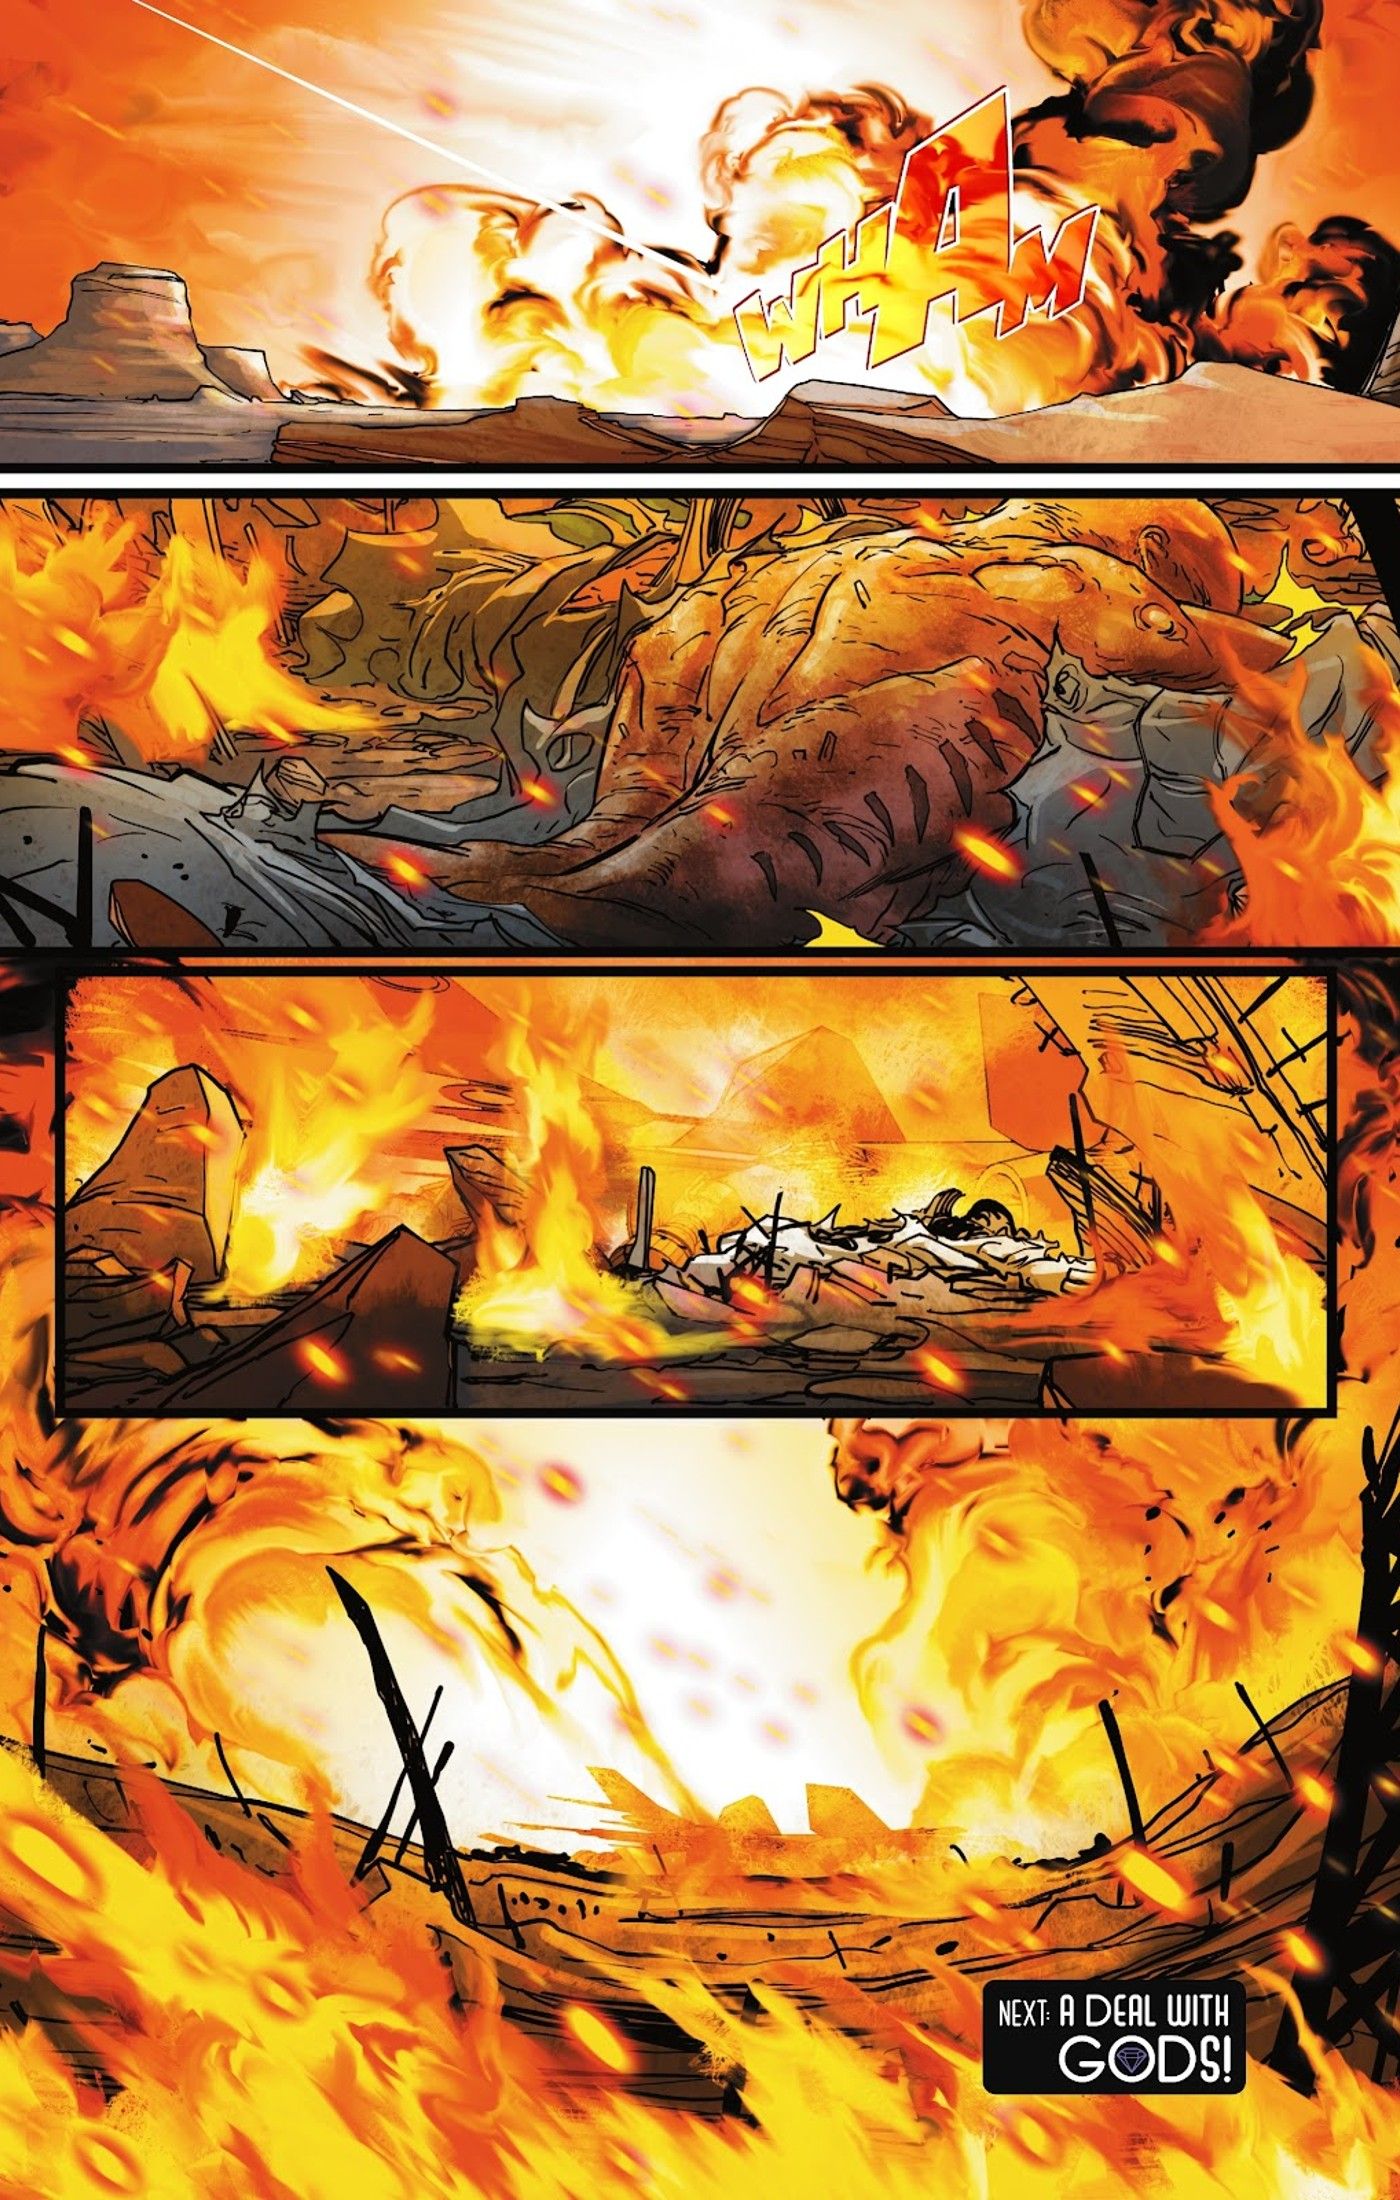 Painéis de quadrinhos: Mulher-Gato bate uma aeronave e ela queima violentamente.